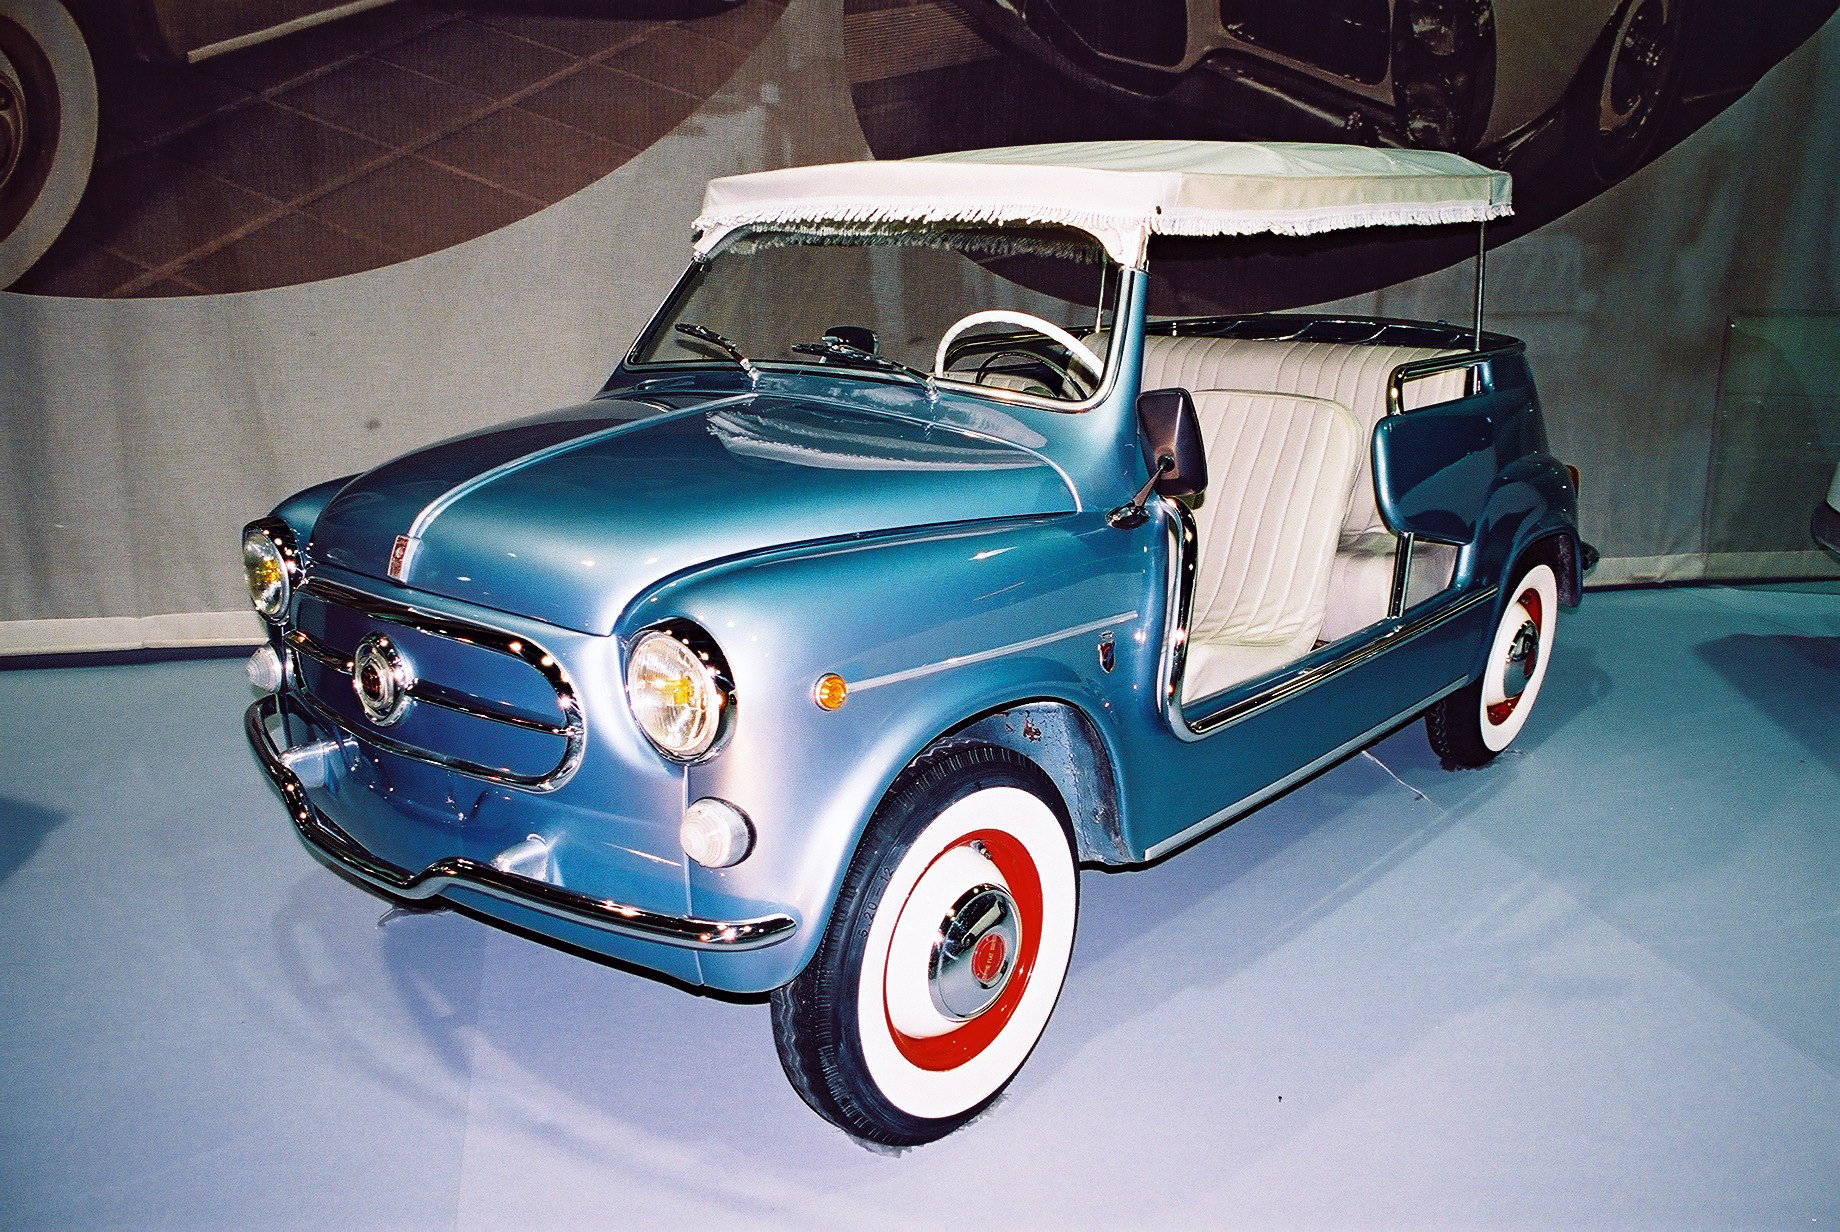 Fiat 600 Jolly - plażowe cacko, zbudowane w 1959 r. przez włoską oficynę karoseryjną Ghia dla księcia Monako Rainiera III. Fot. Grzegorz Chmielewski 